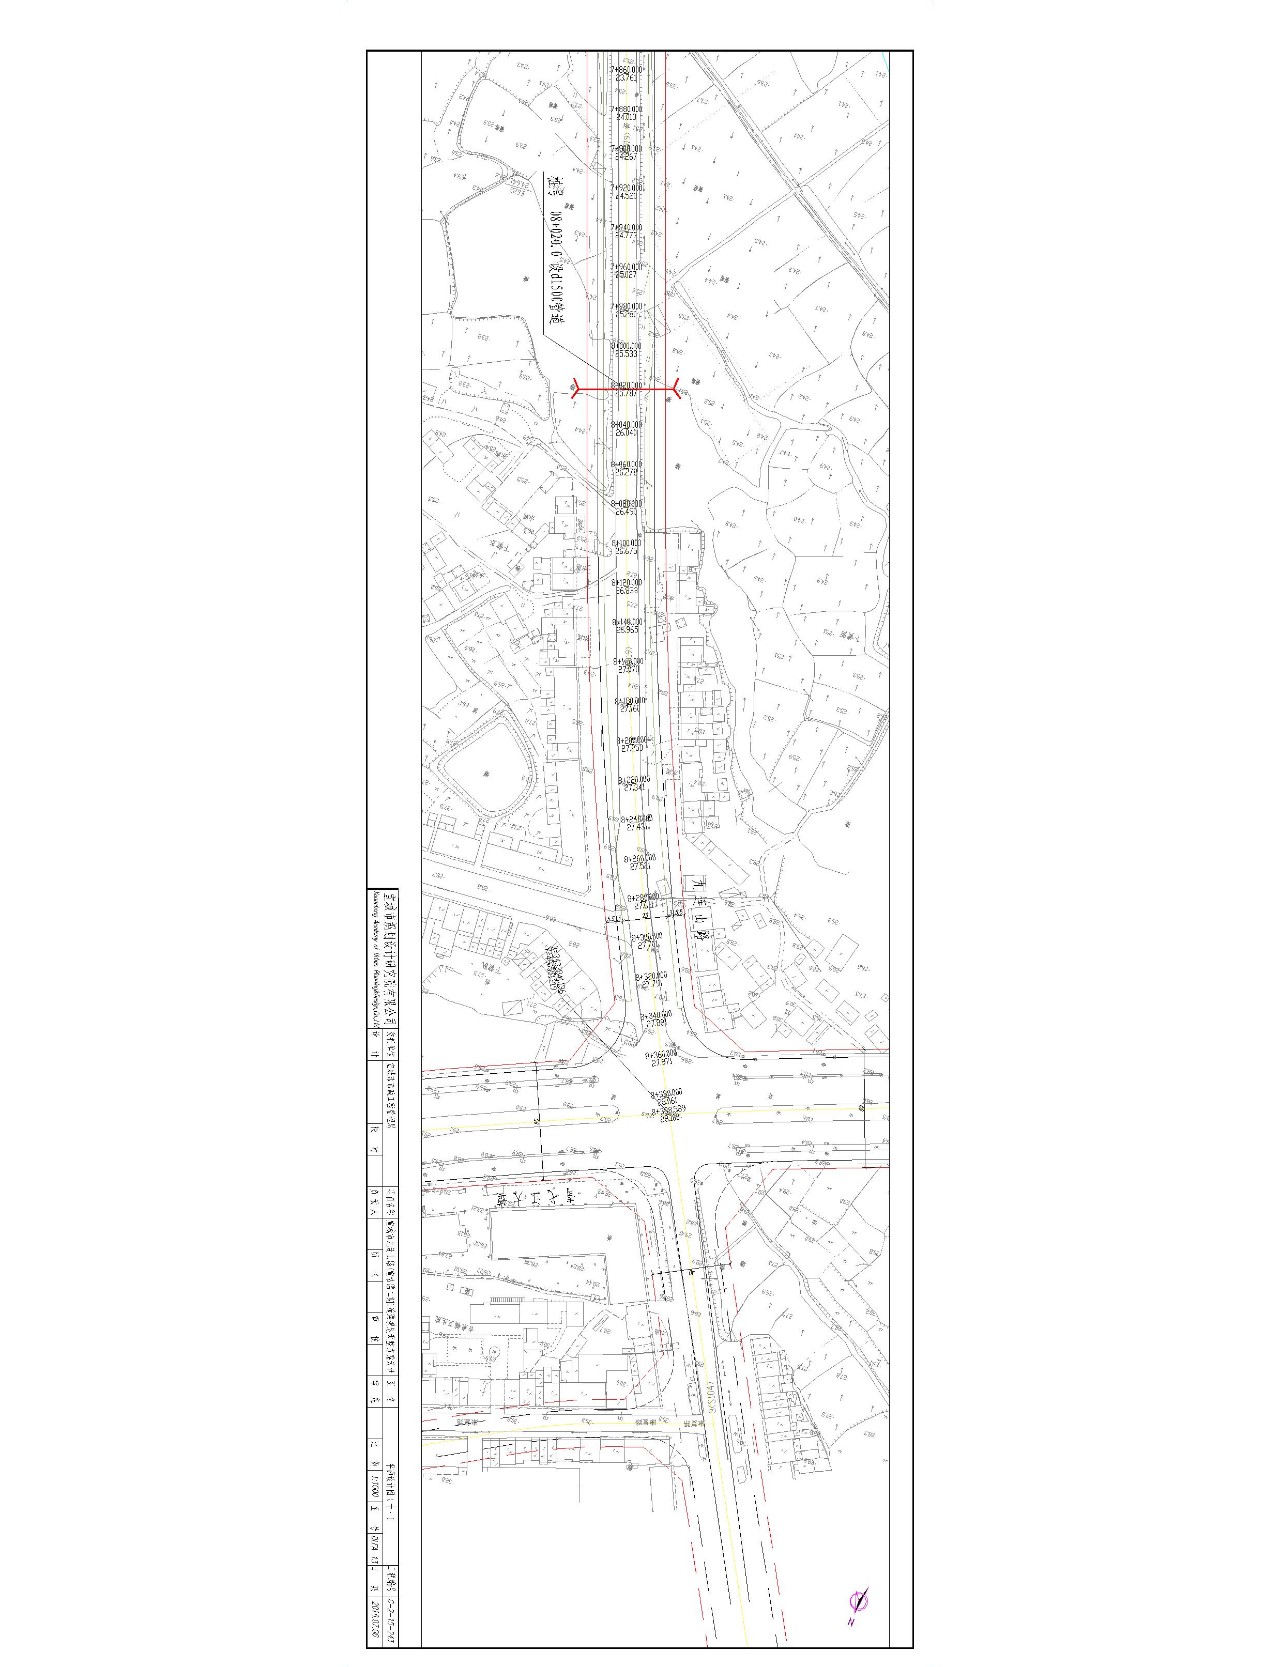 宣城市九连山路(宣古路二期)道路规划调整设计方案总平面图批后公布